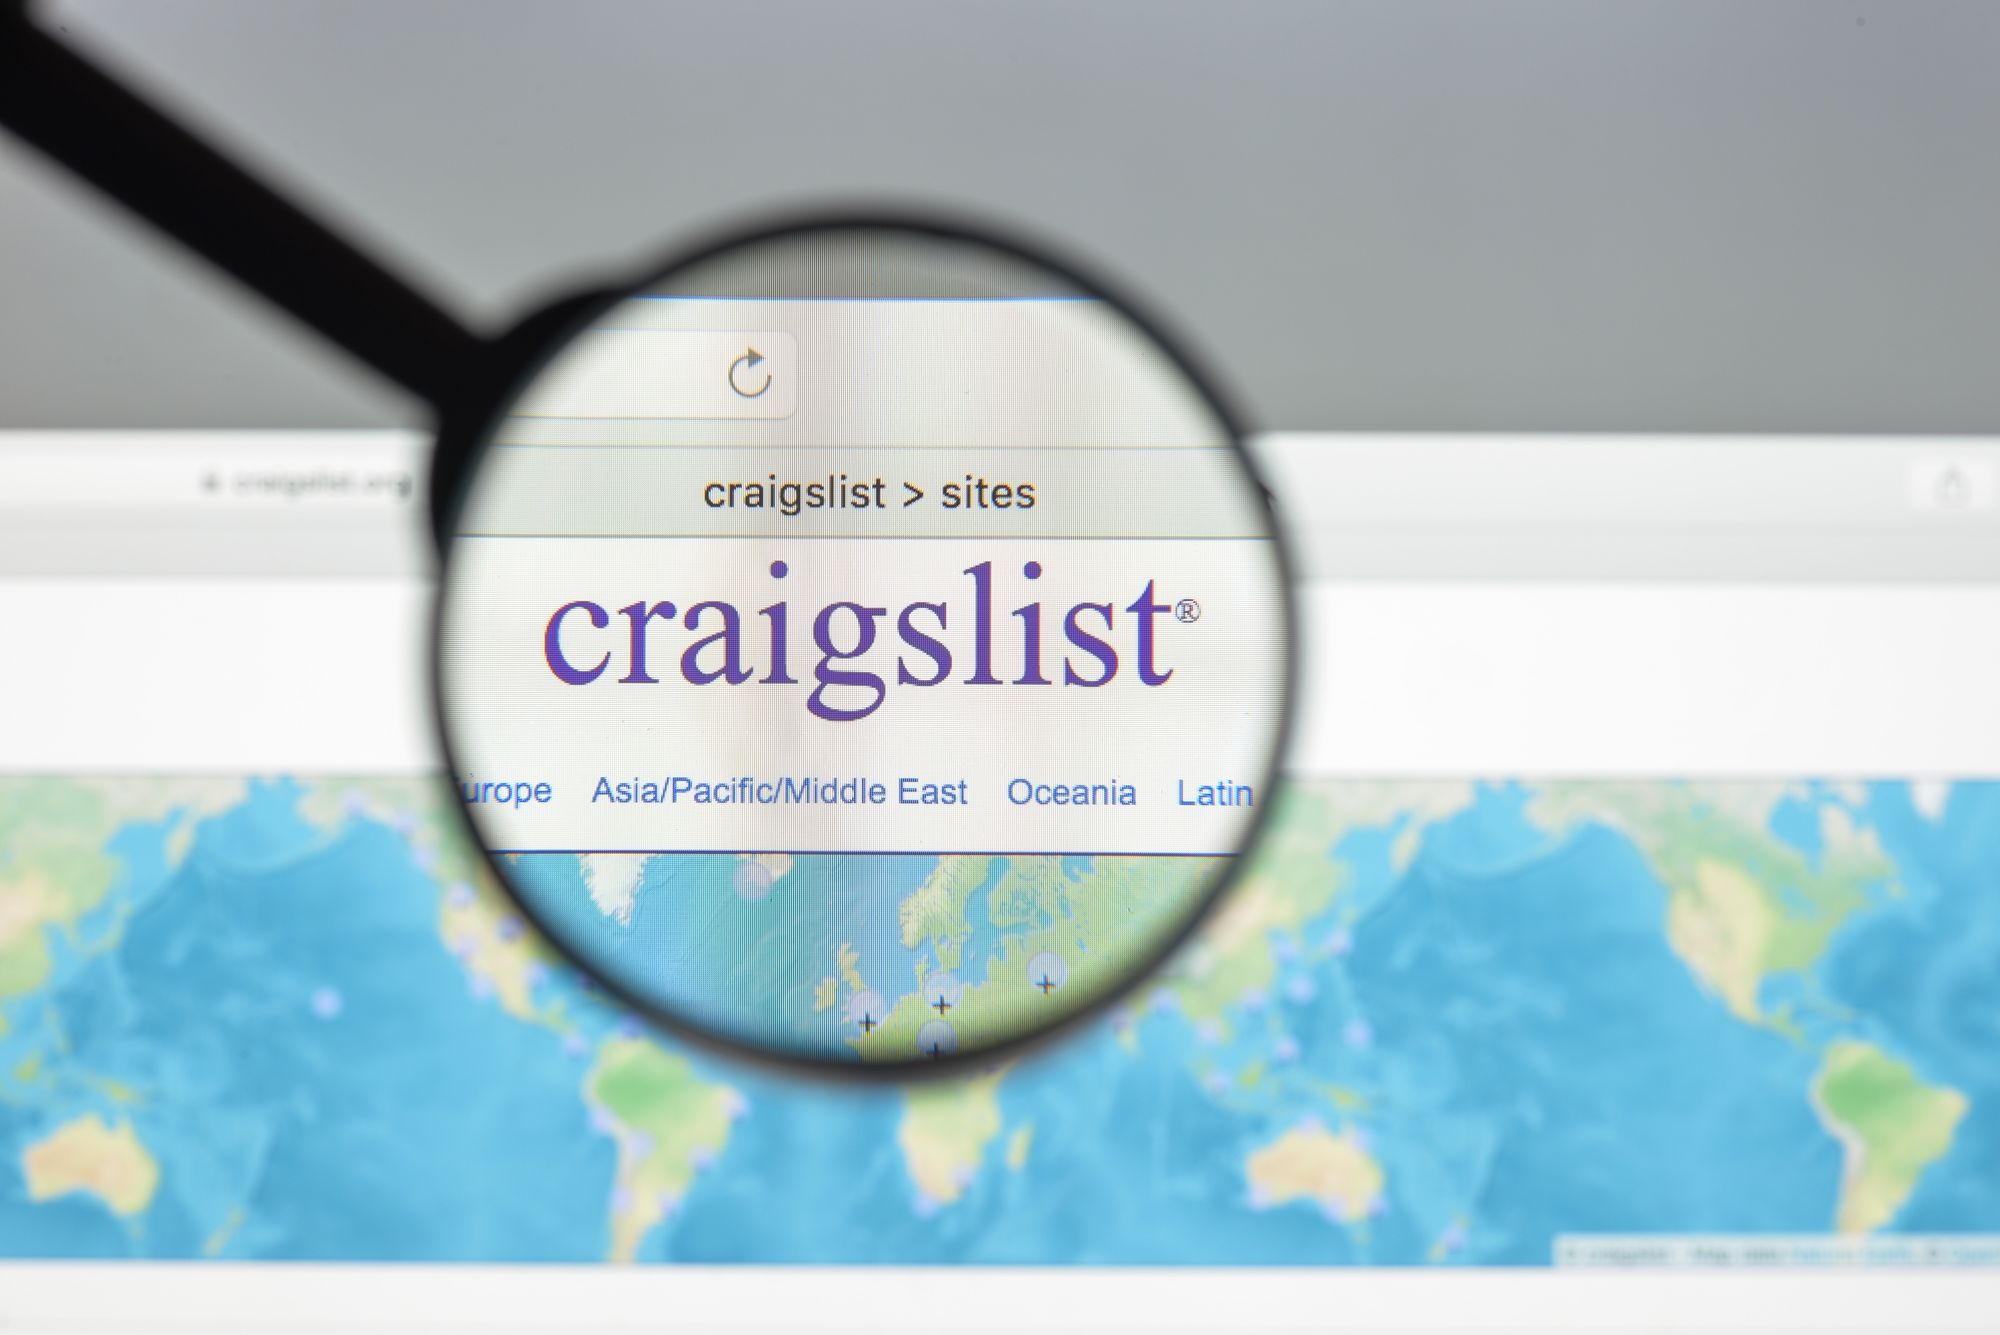 Craigslist Hijacked to Spread Malware